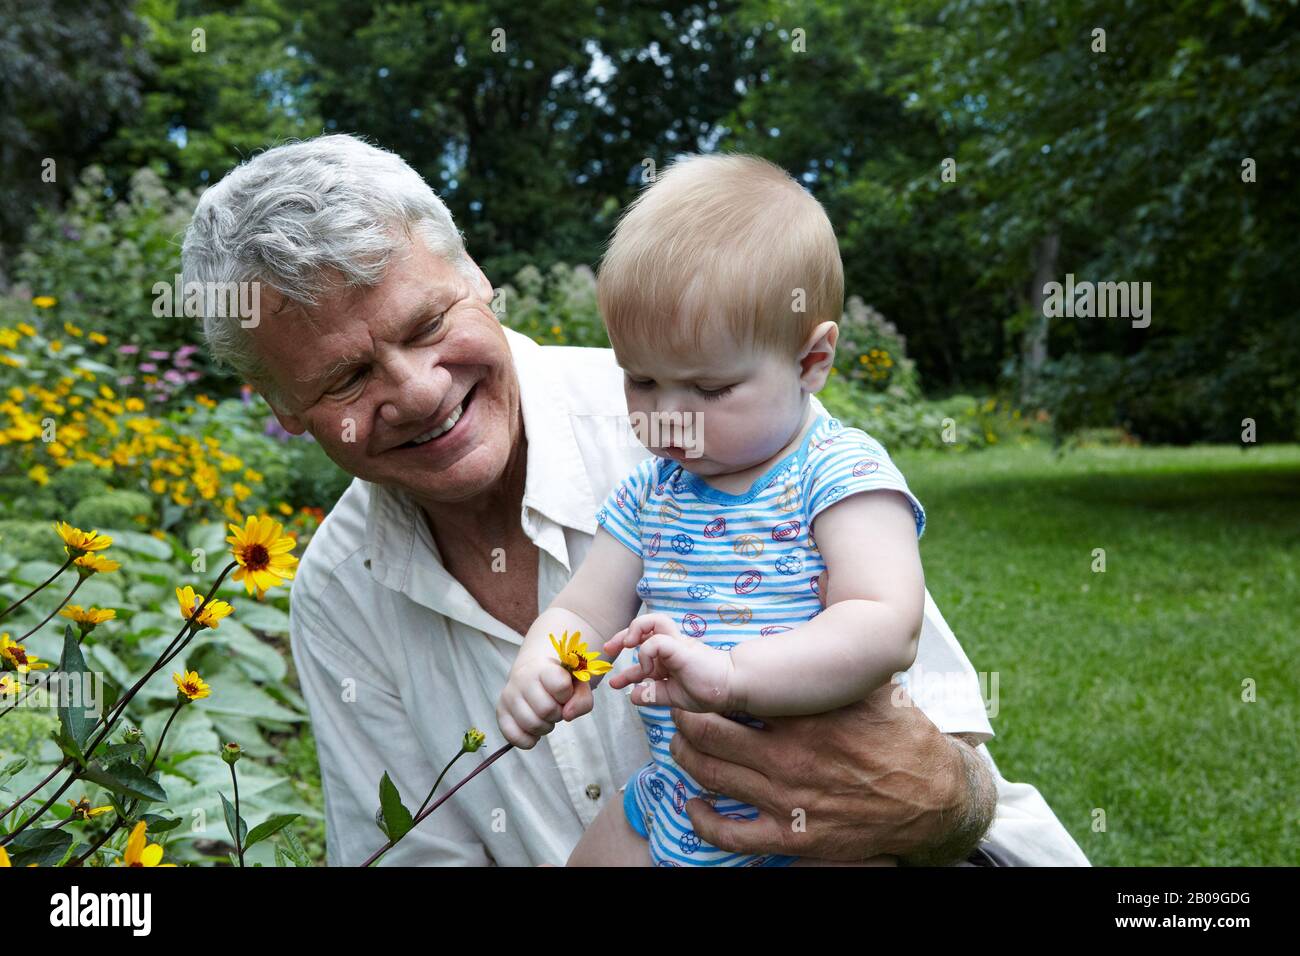 Grand-Père de 70 ans tenant son petit-fils de 7 mois dans un jardin explorant la nature et tenant une fleur jaune Banque D'Images